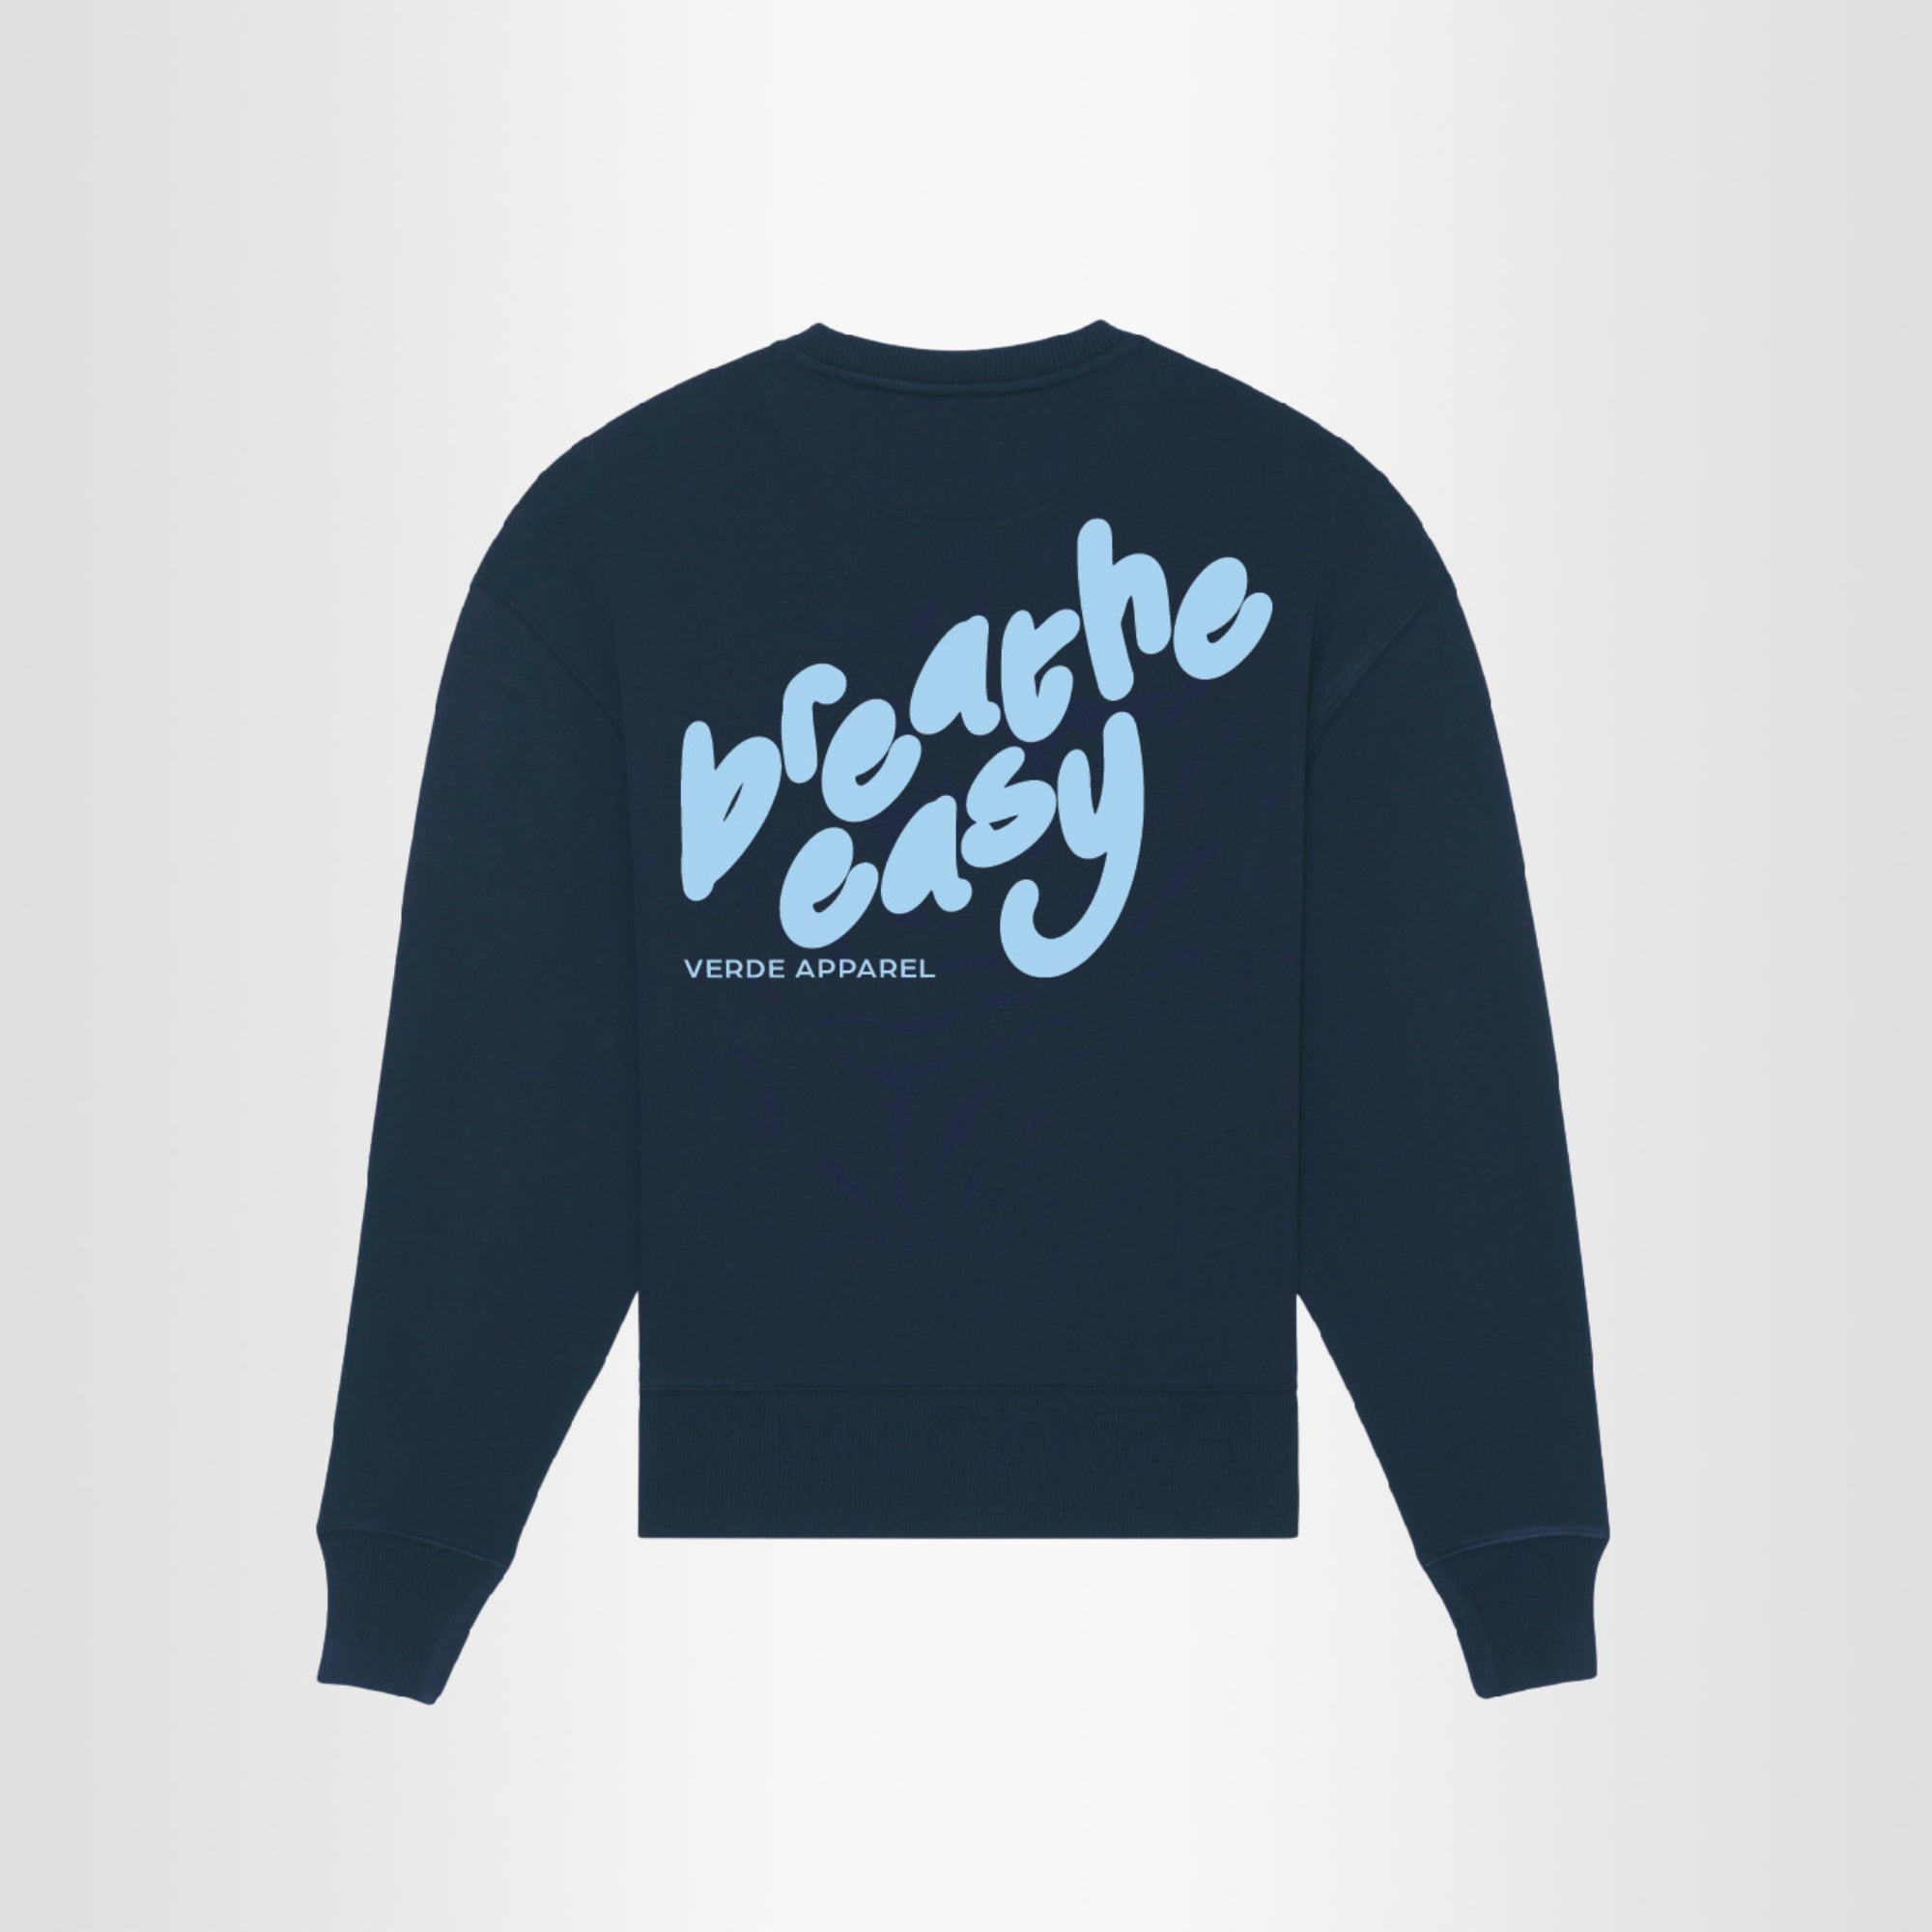 Breathe Easy Sweatshirt